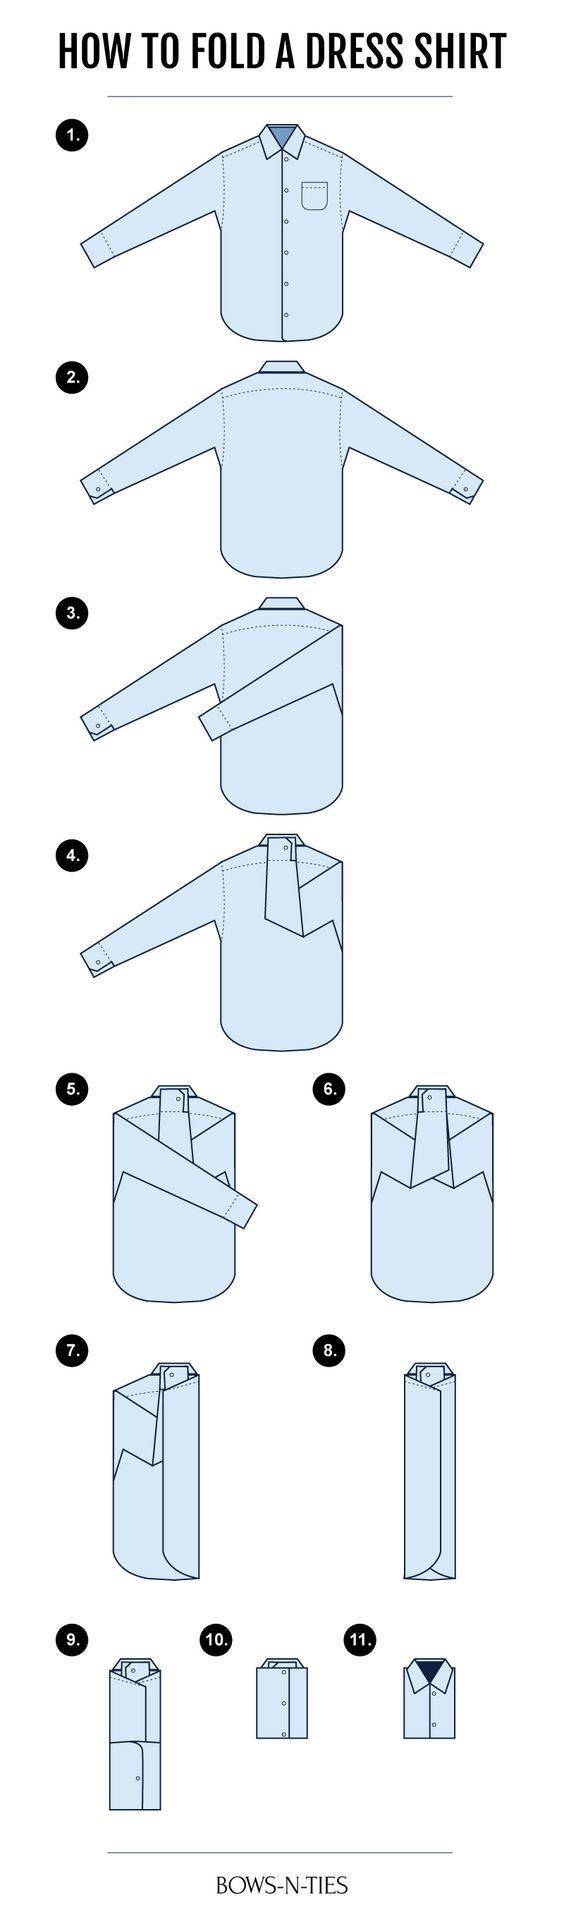 Как складывать мужские рубашки: инструкция, фото и видео | мамины шпаргалочки